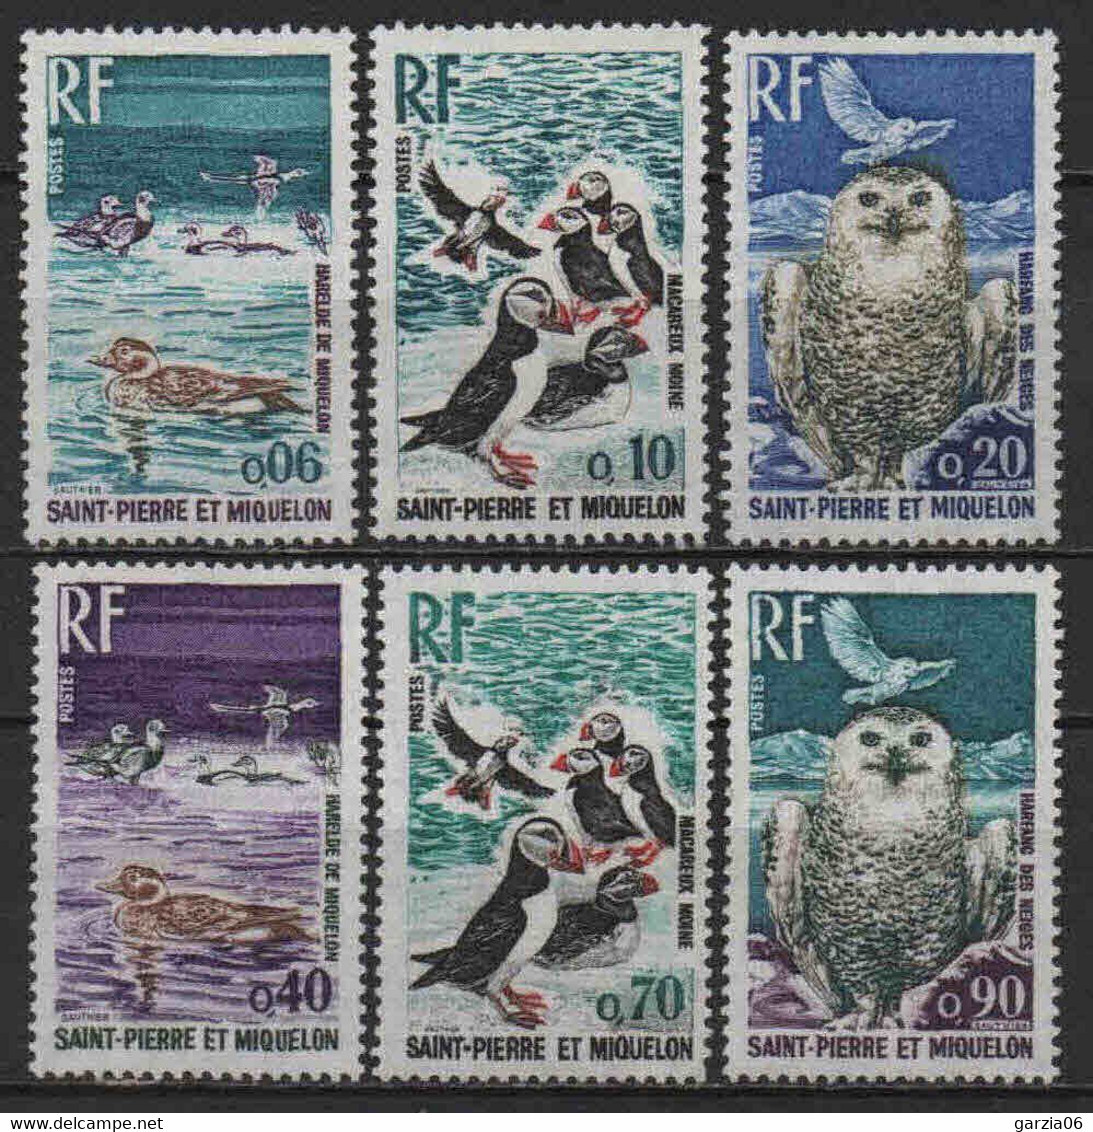 St Pierre Et Miquelon  - 1973  - Oiseaux  - N° 425 à 430  - Neufs ** MNH - Unused Stamps